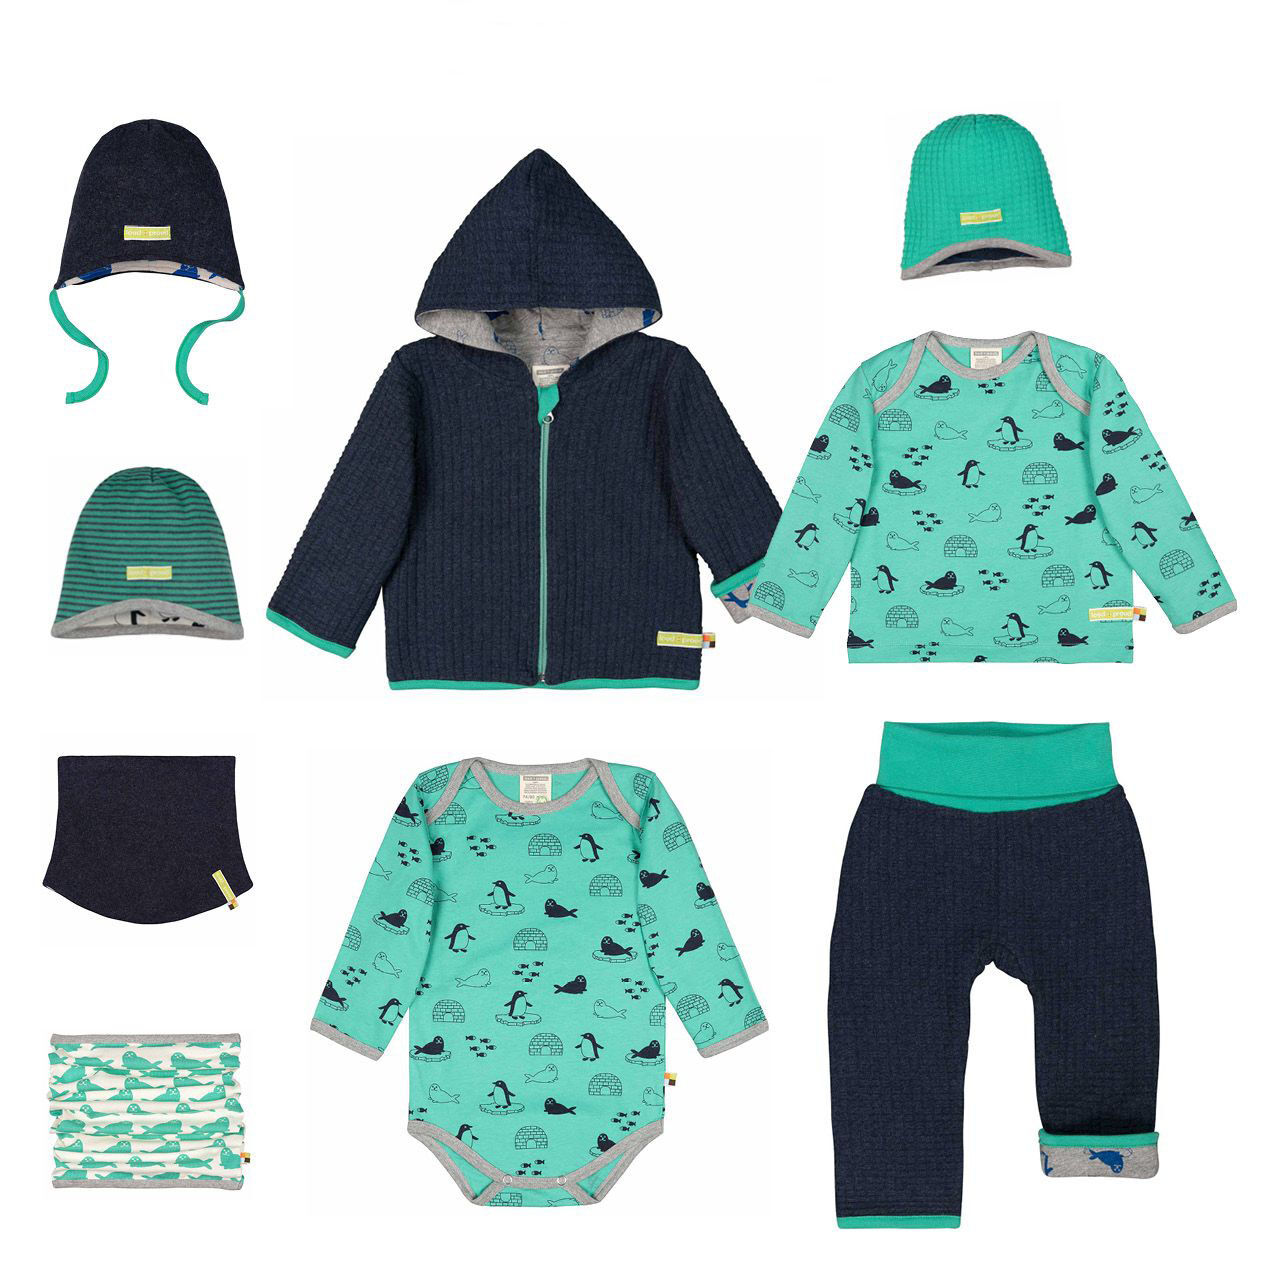 Téli Designer gyerekruha kollekció ötlet Kék-zöld